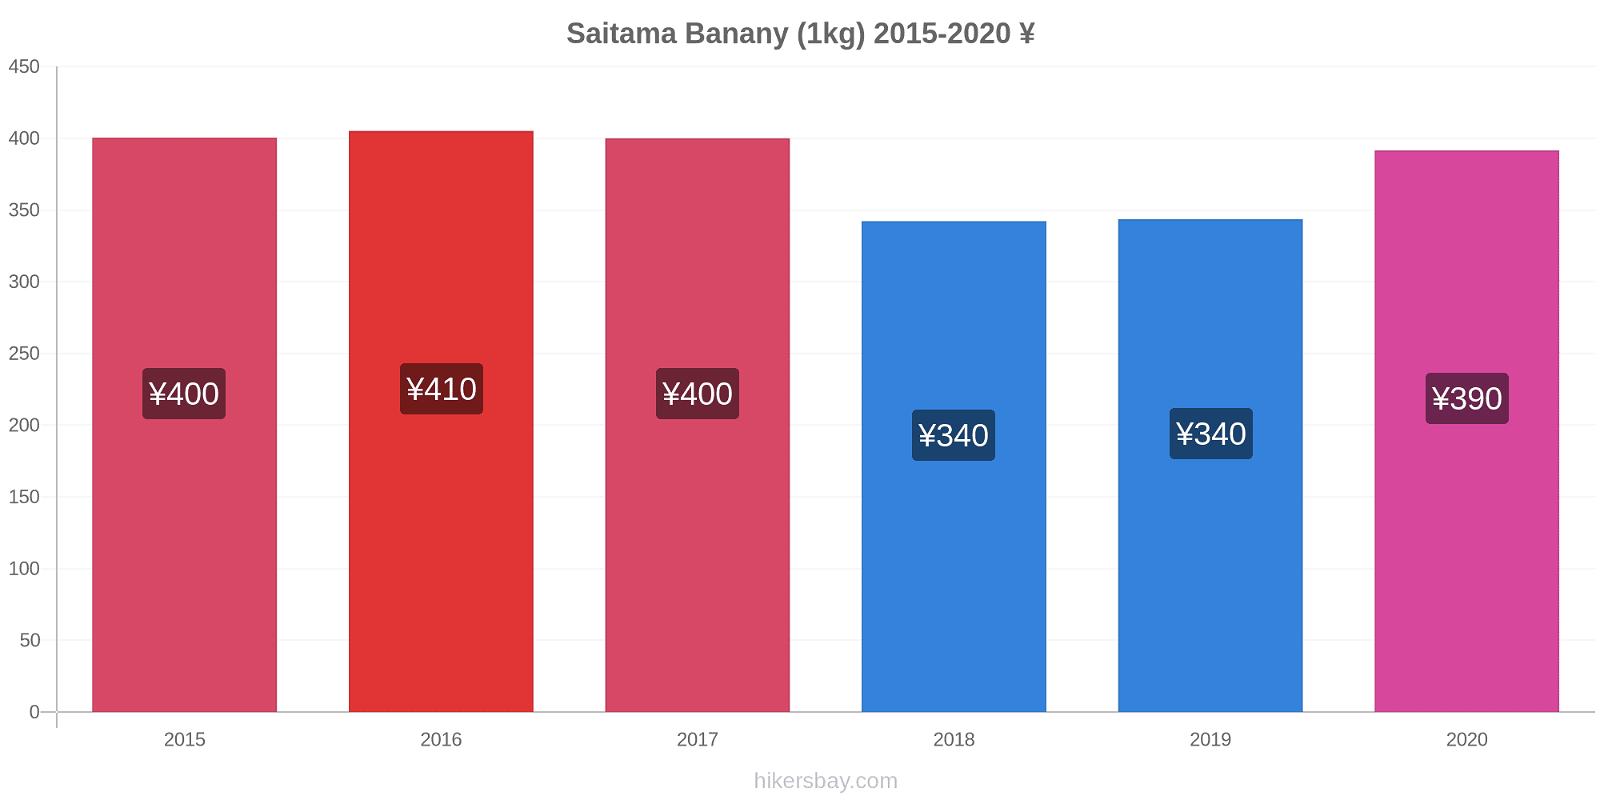 Saitama zmiany cen Banany (1kg) hikersbay.com